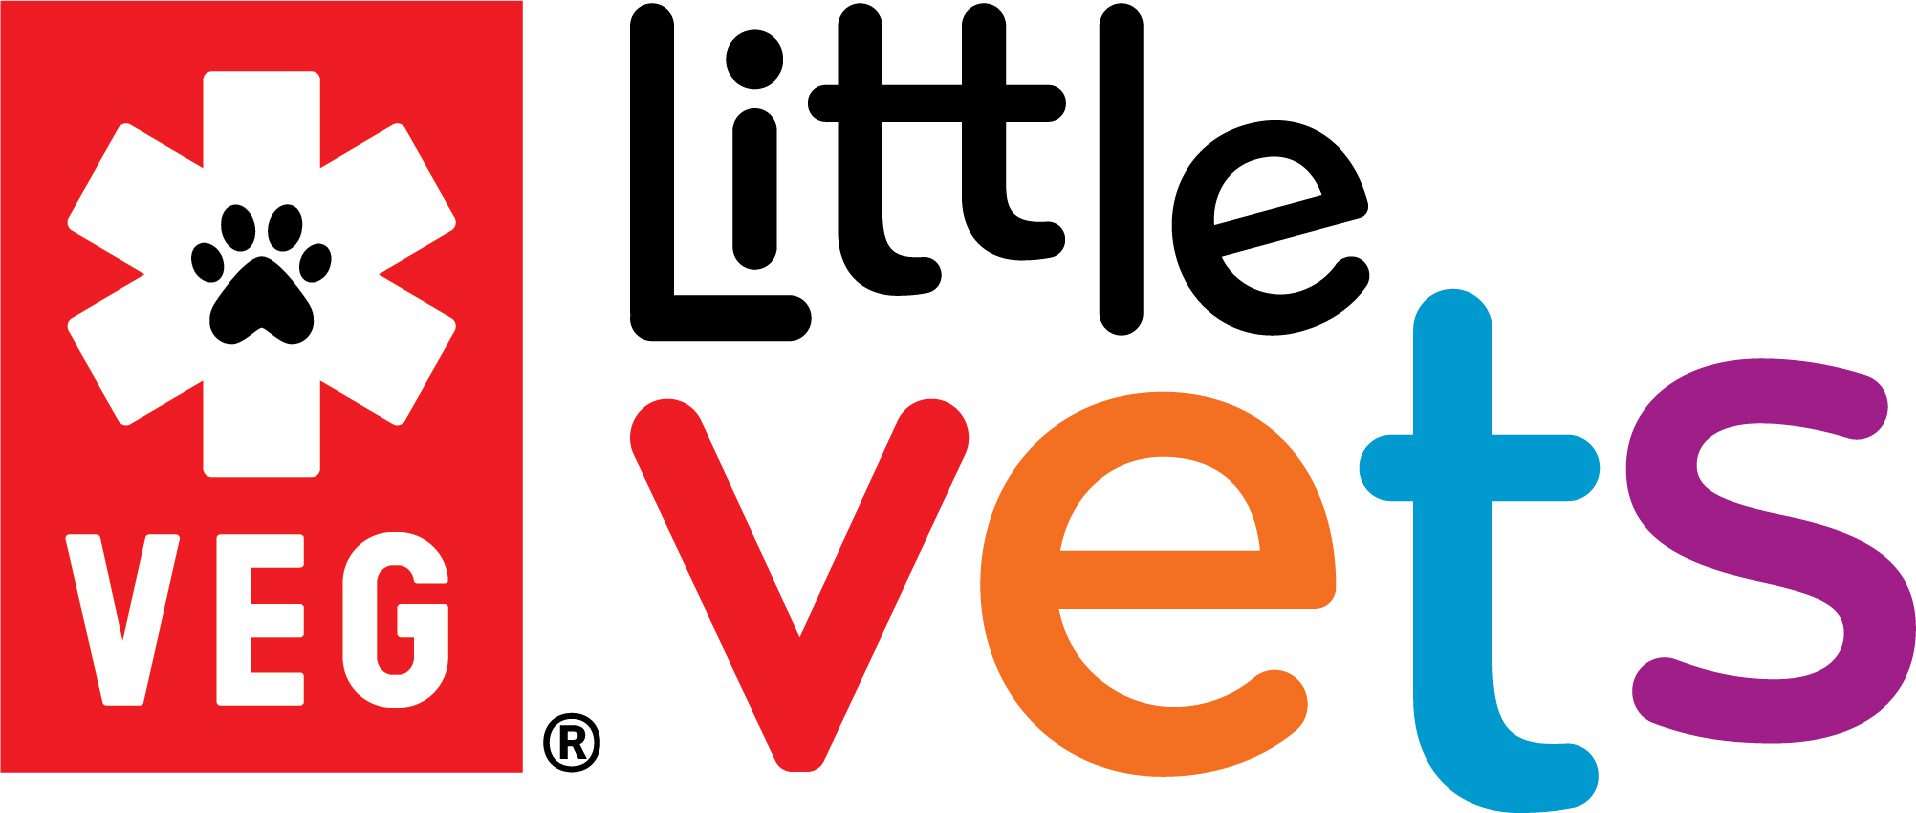 Little Vets Logo